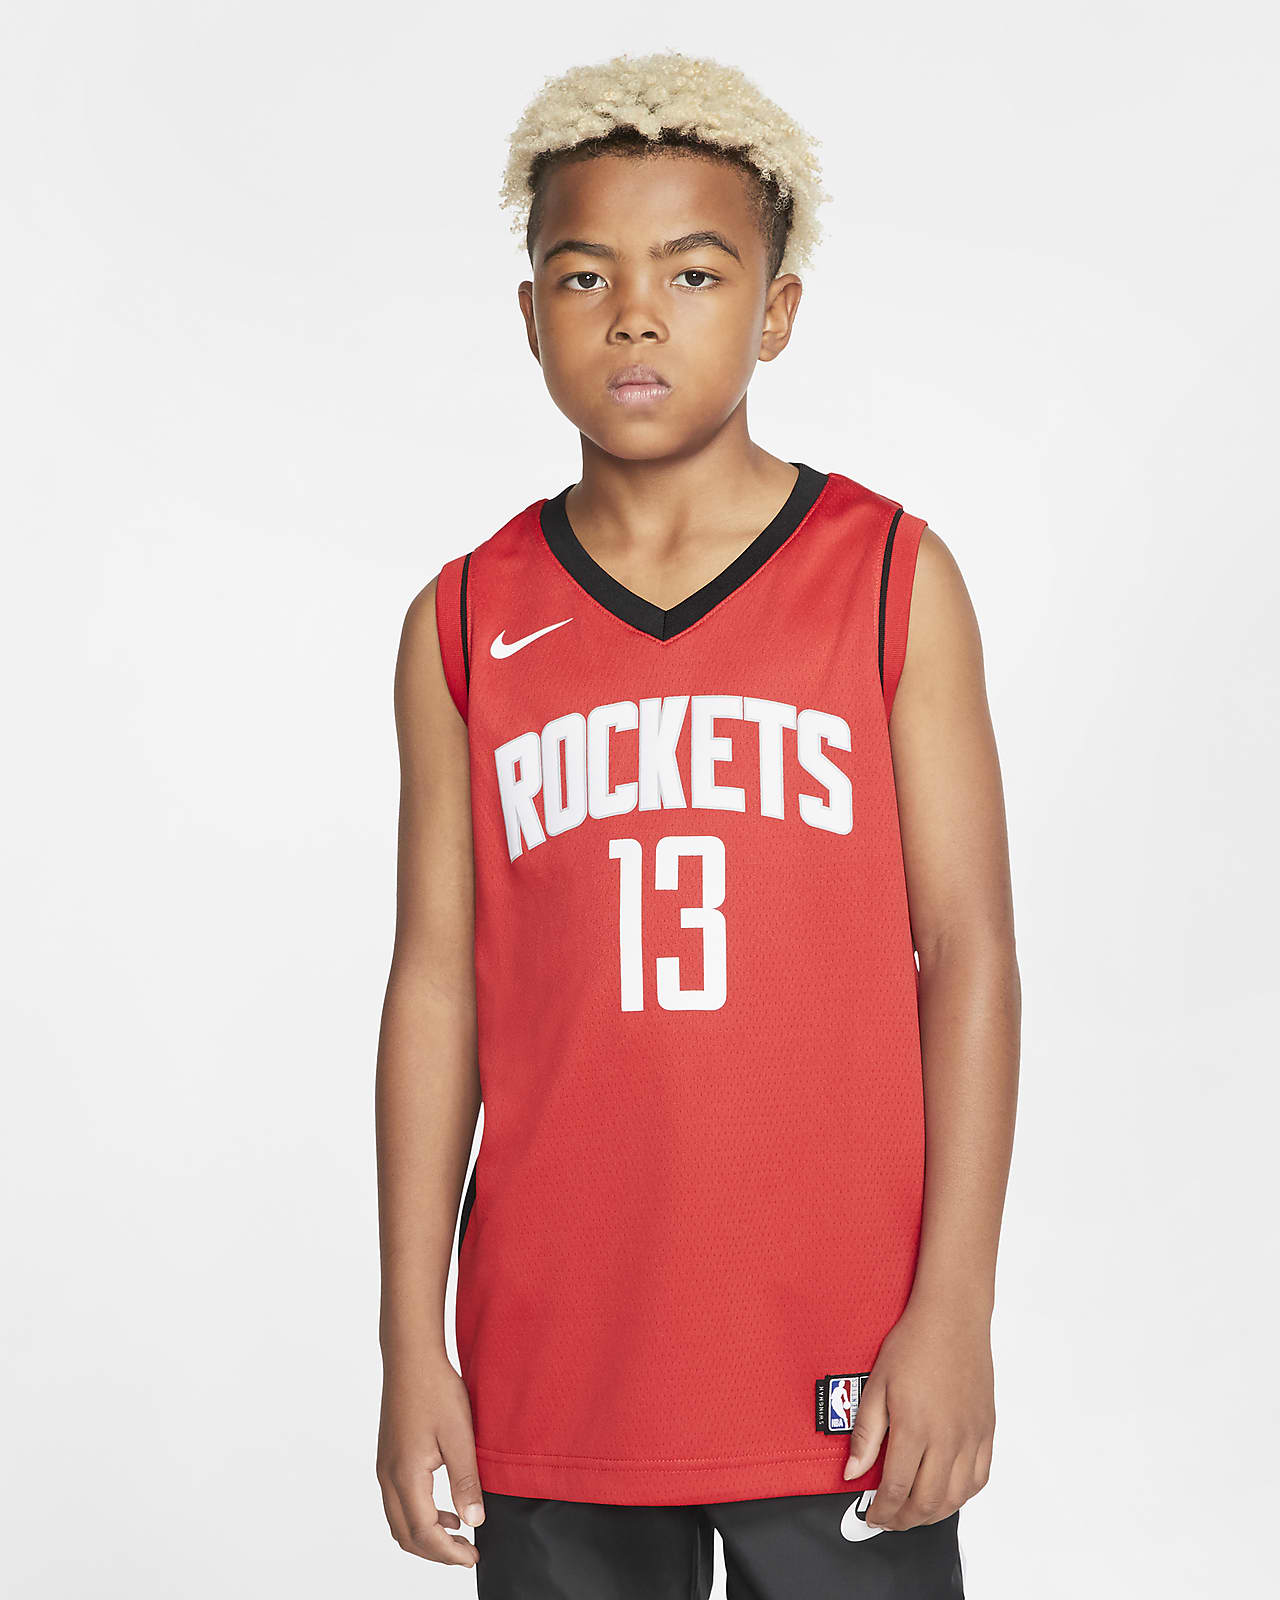 Rockets Icon Edition Older Kids' Nike NBA Swingman Jersey